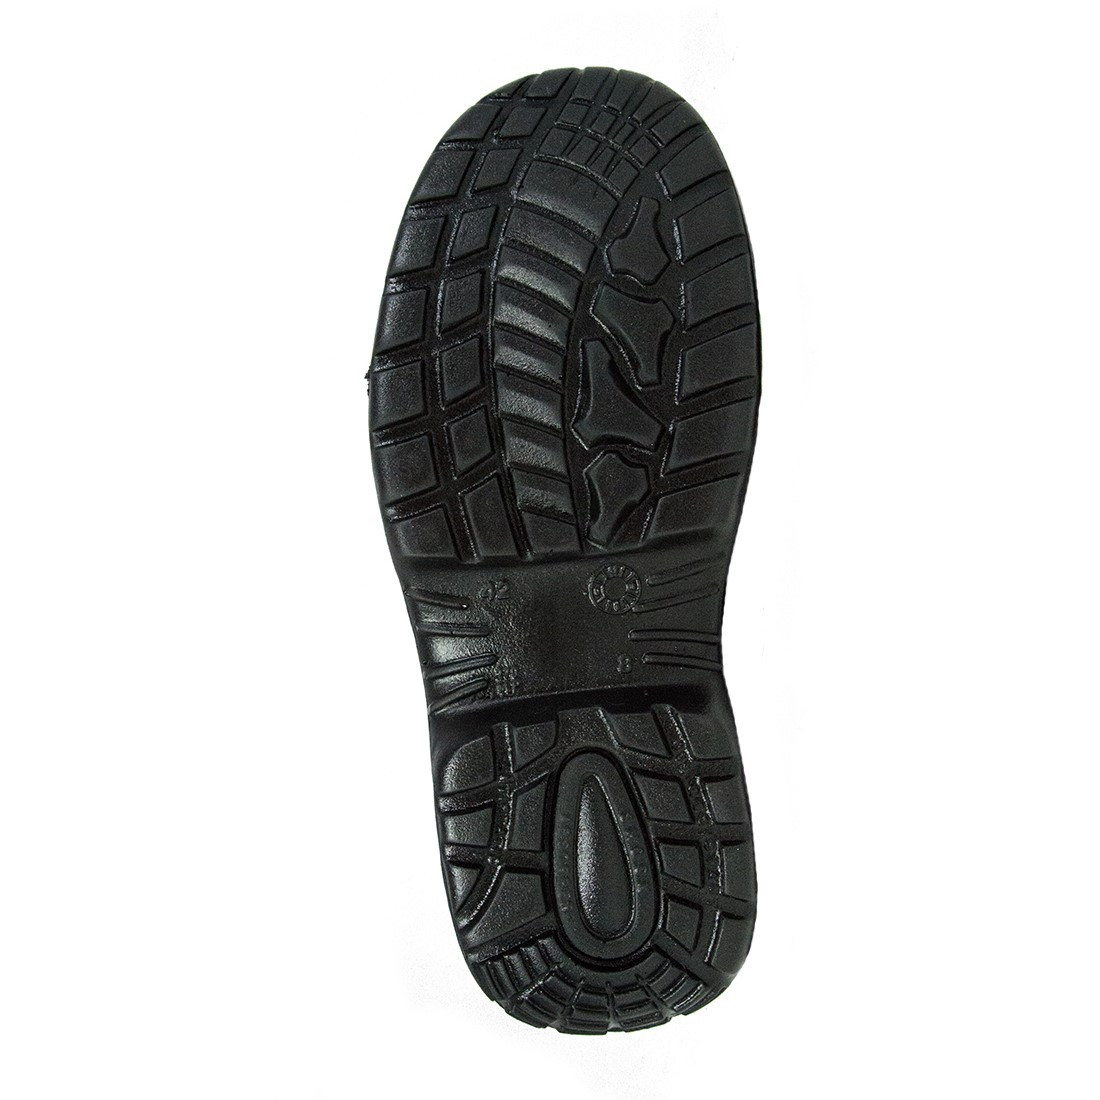 Termini Shoe S3 SRC - Les chaussures de protection